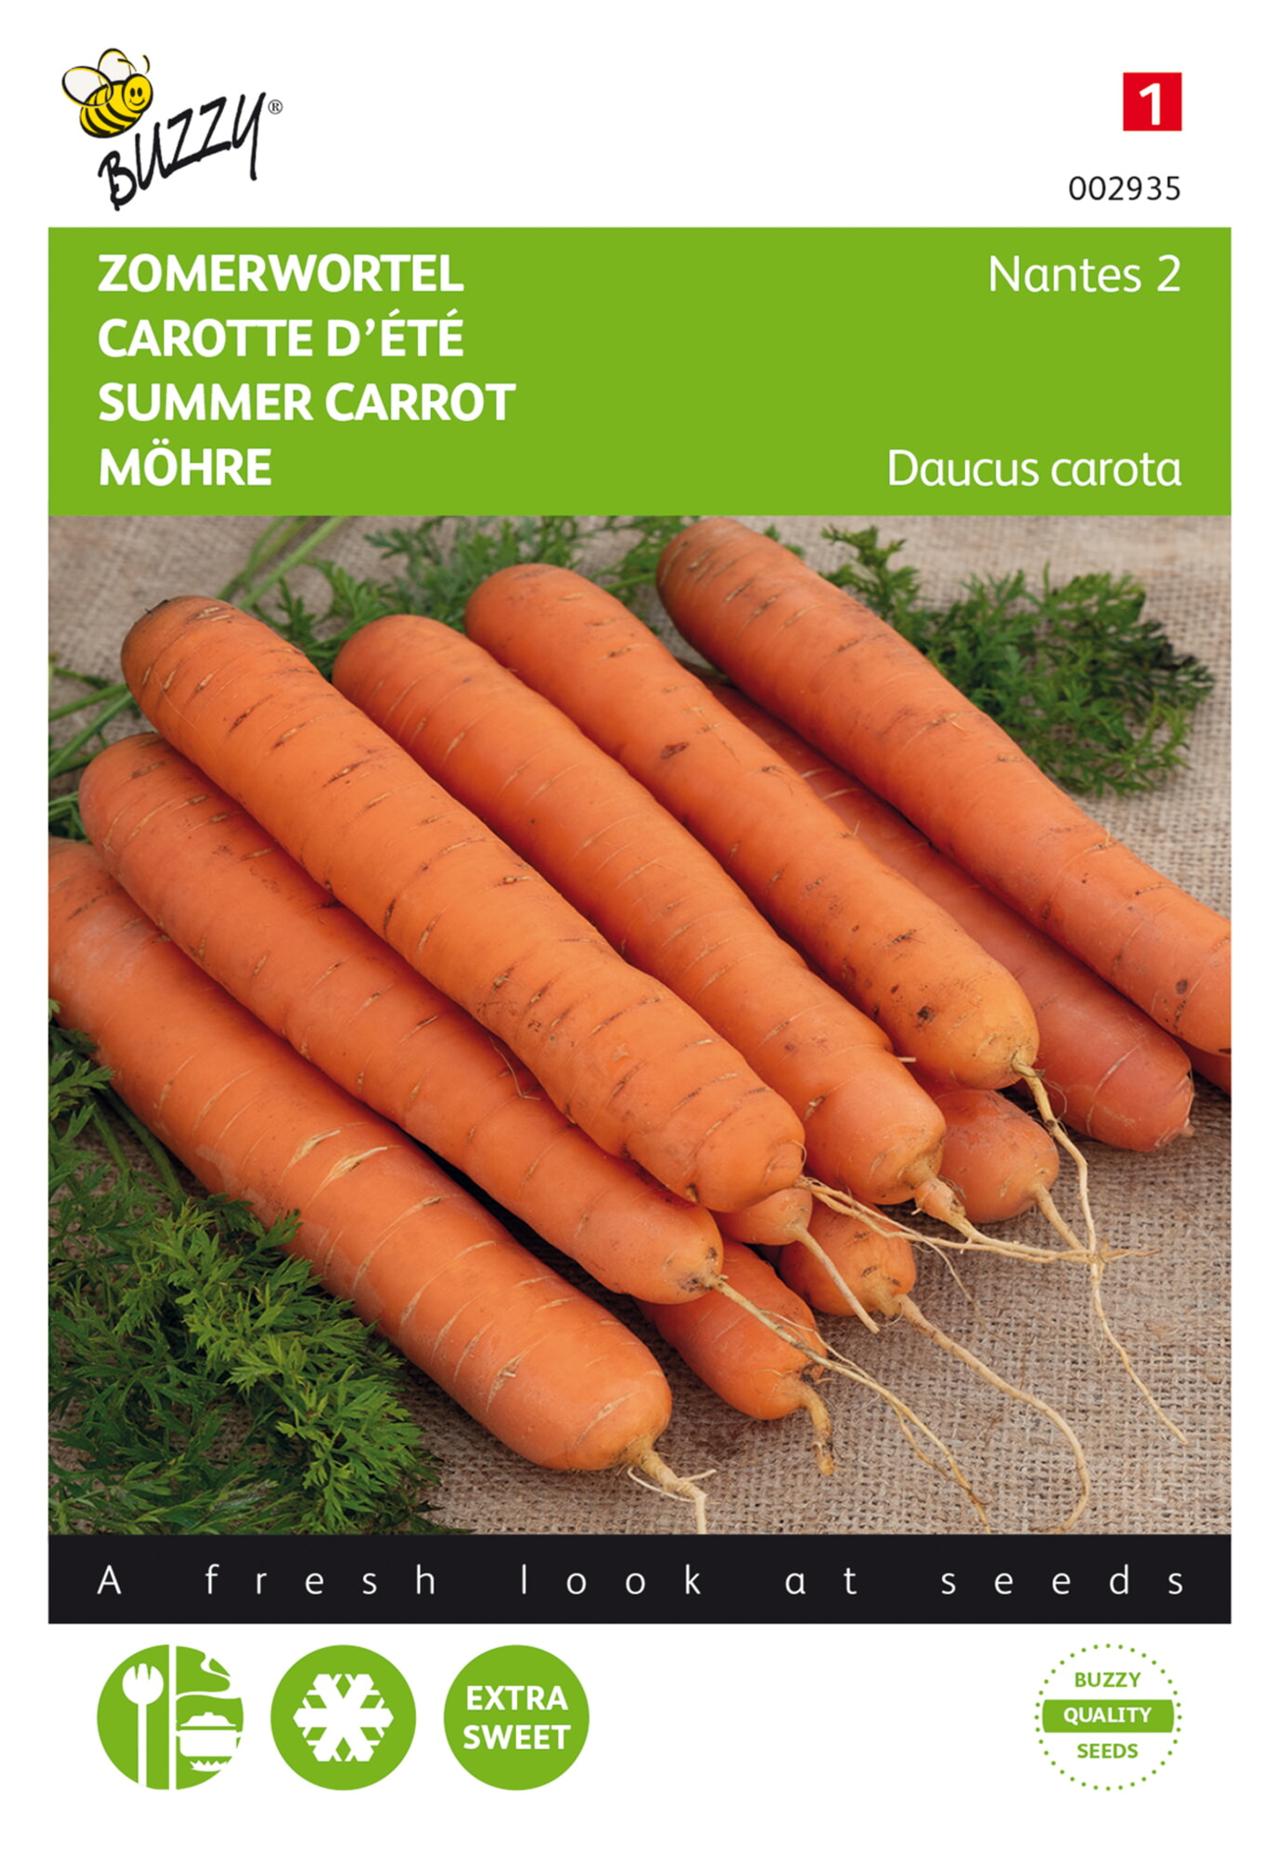 Daucus carota 'Nantes 2' plant